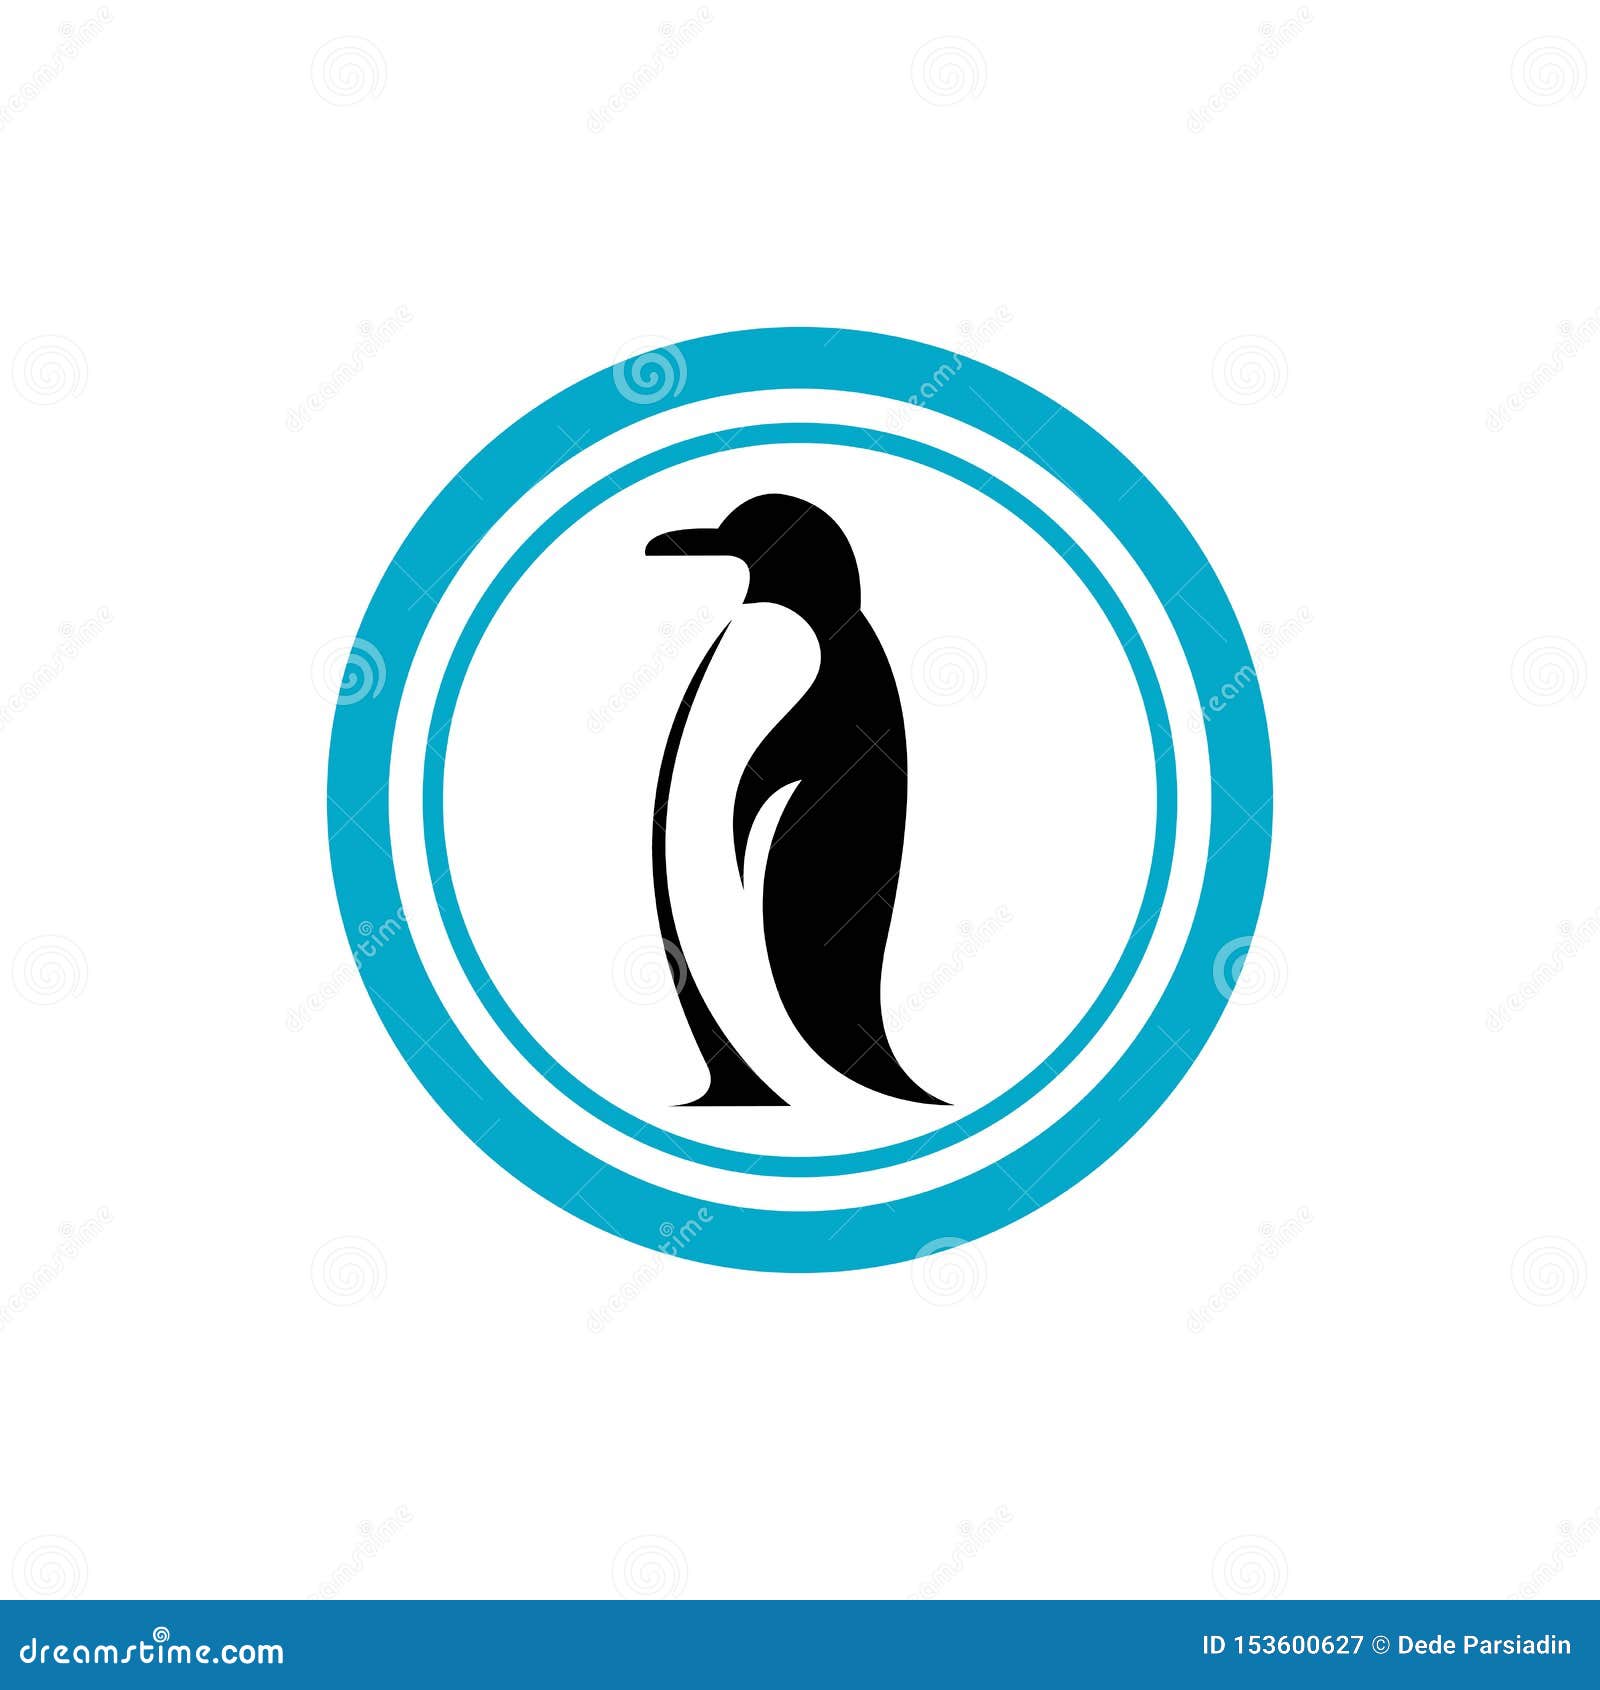 Penguin stock vector. Illustration of penguin, iceberg - 153600627